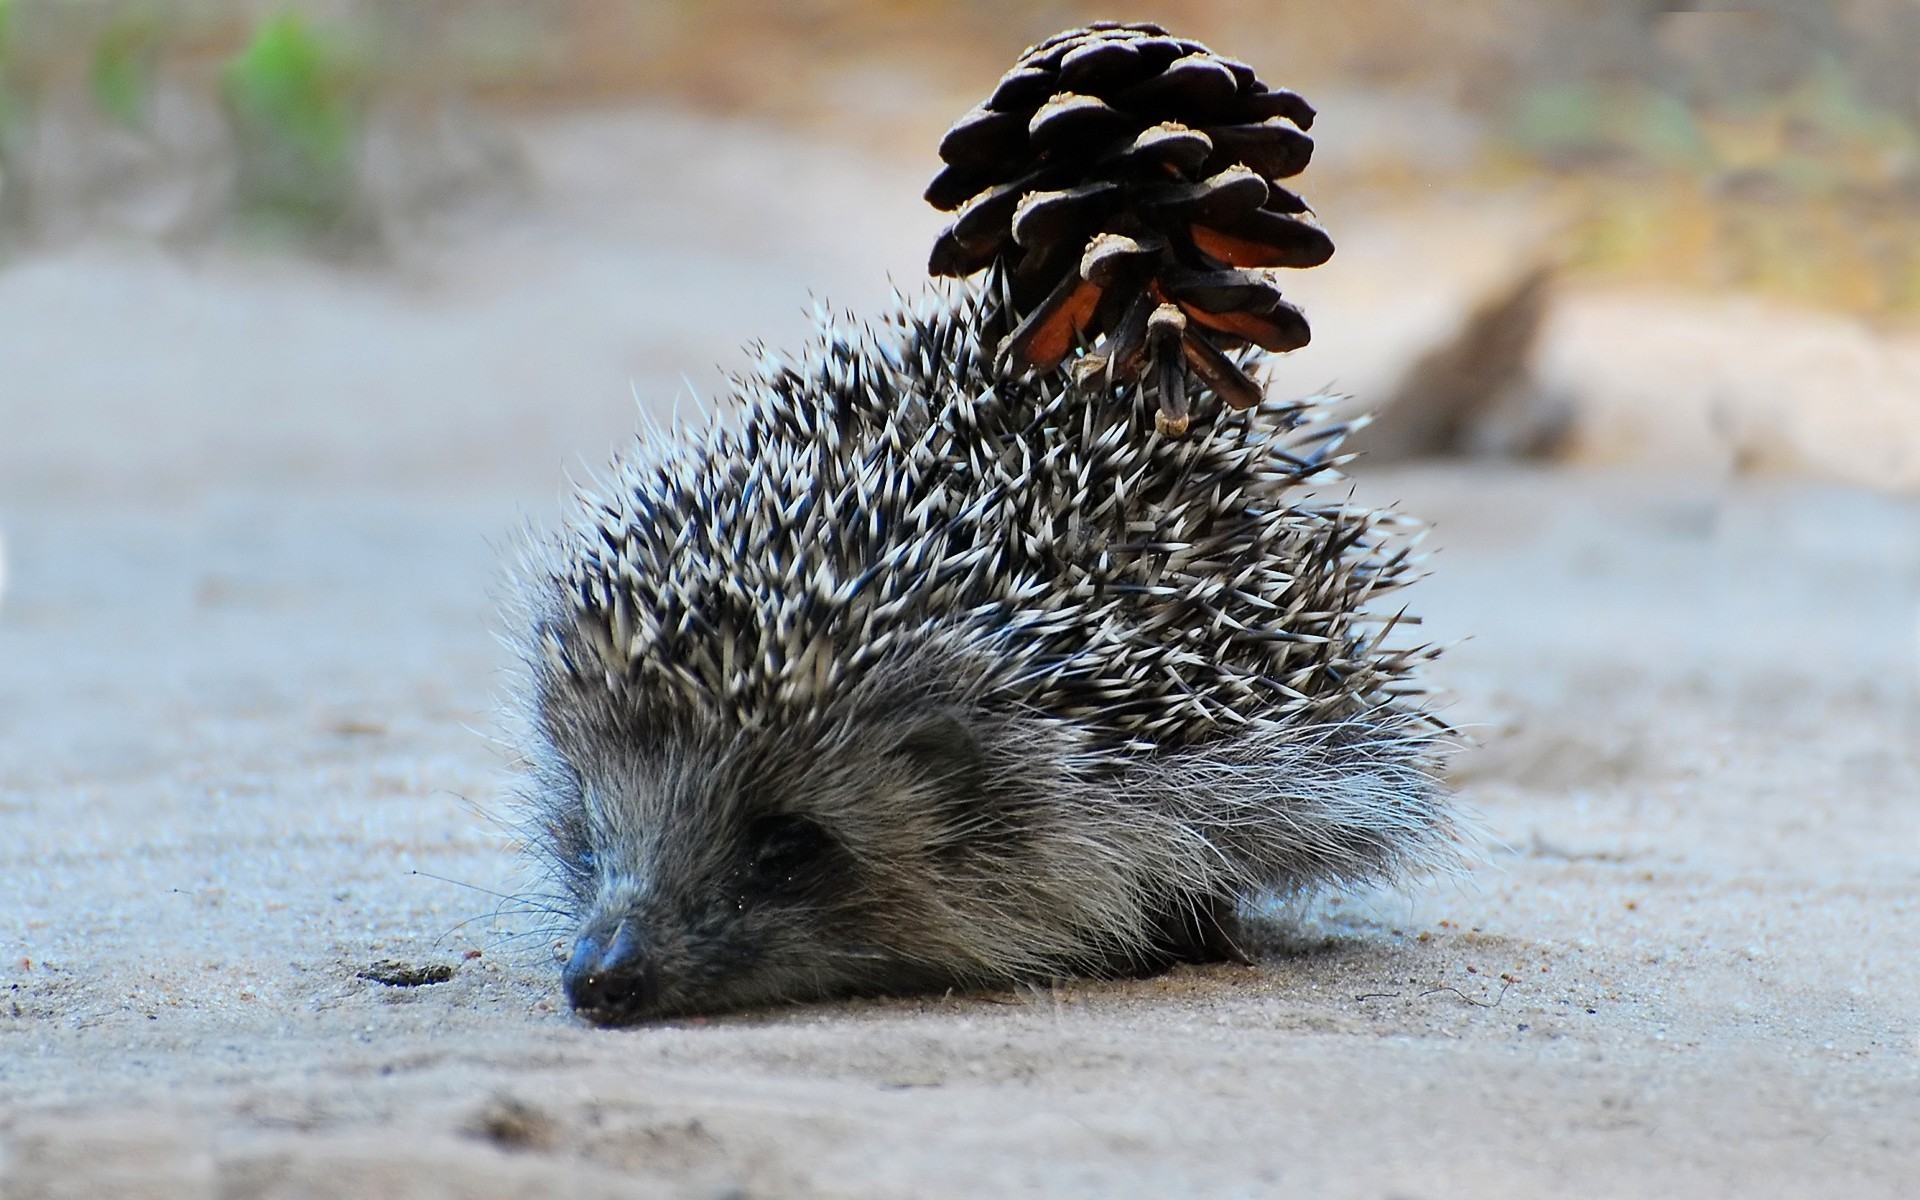 animals, hedgehogs, pinecones - desktop wallpaper